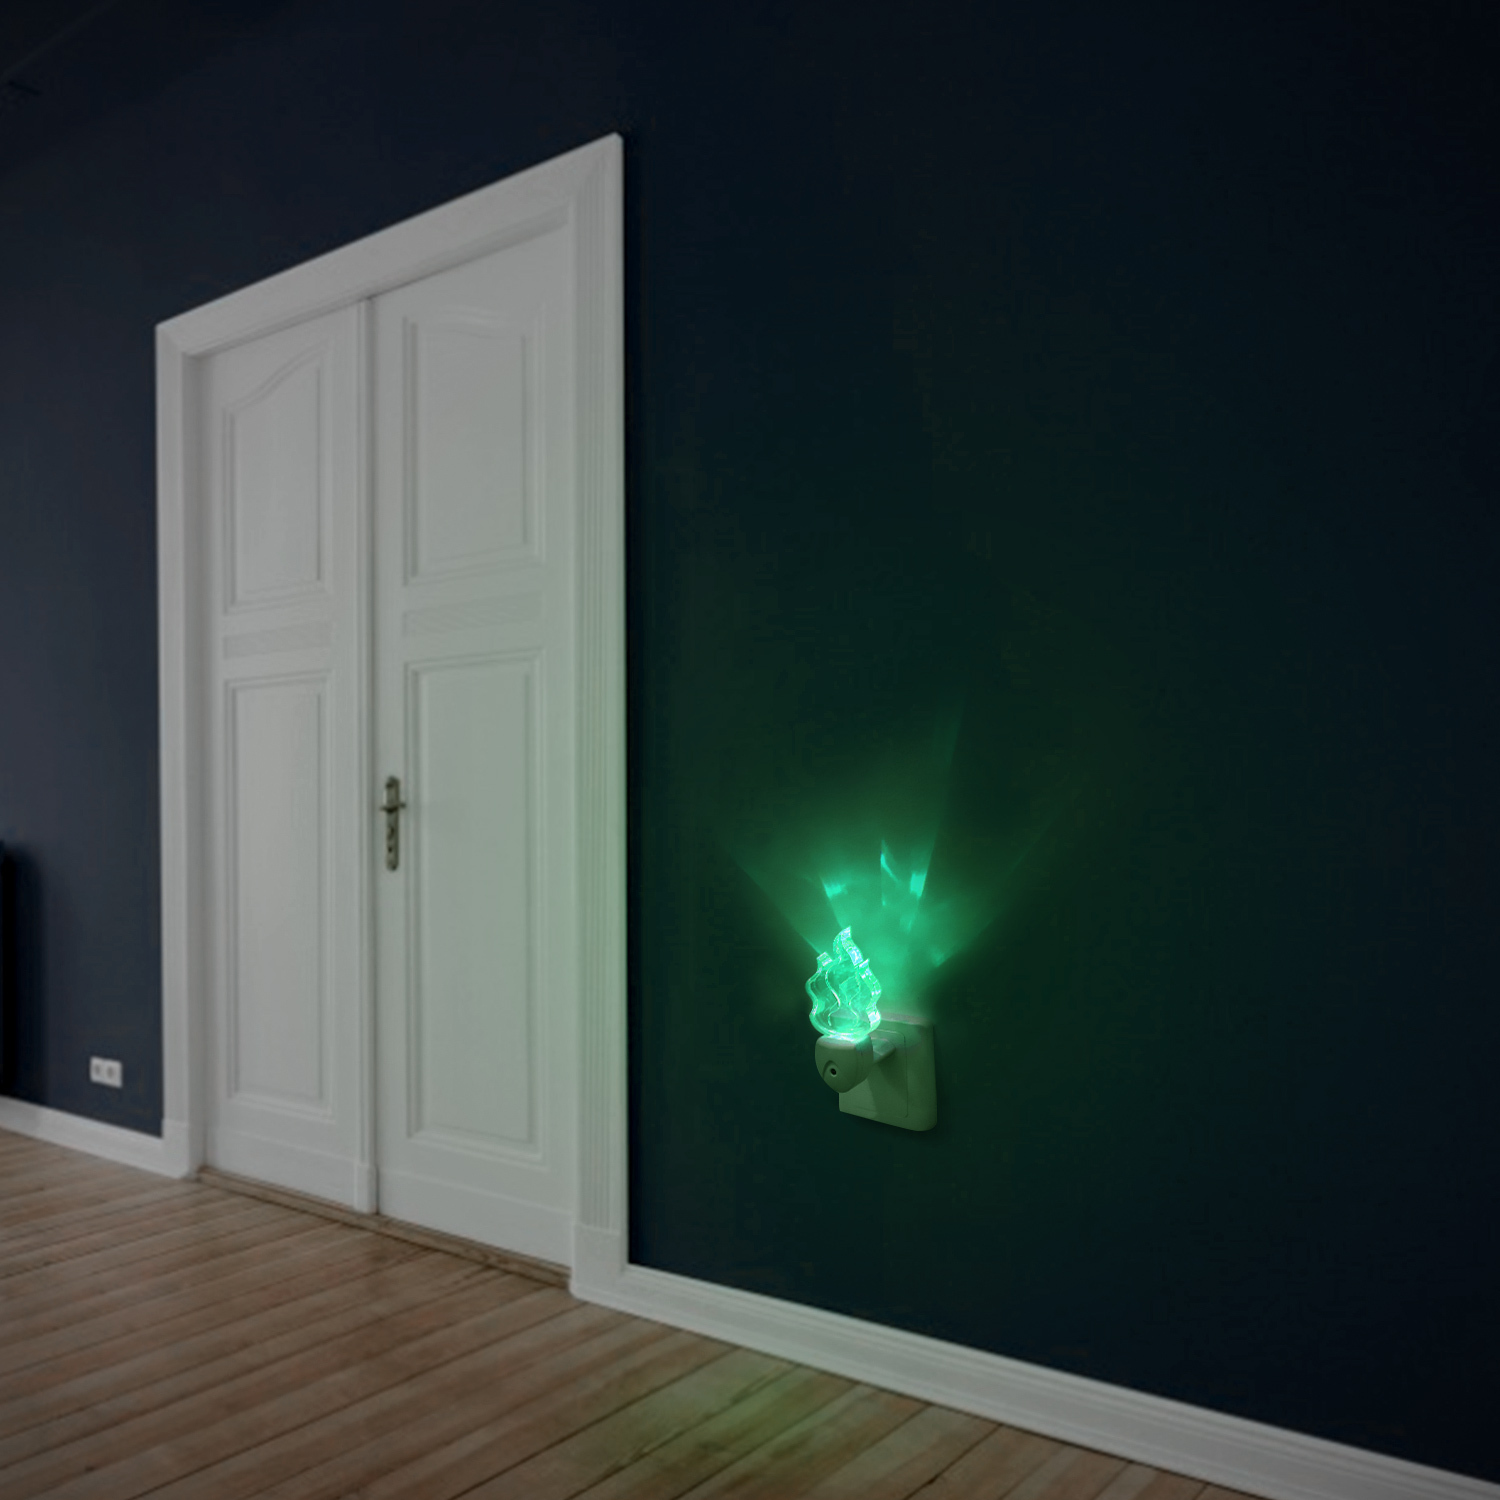 Aigostar Luz nocturna LED - 5 x Quitamiedos infantil, sensor de oscuridad, Multicolor, 0.5 W, RGB 7 colores, enchufable, perfecto para pasillos o habitaciones infantiles. Forma de llama.(5)